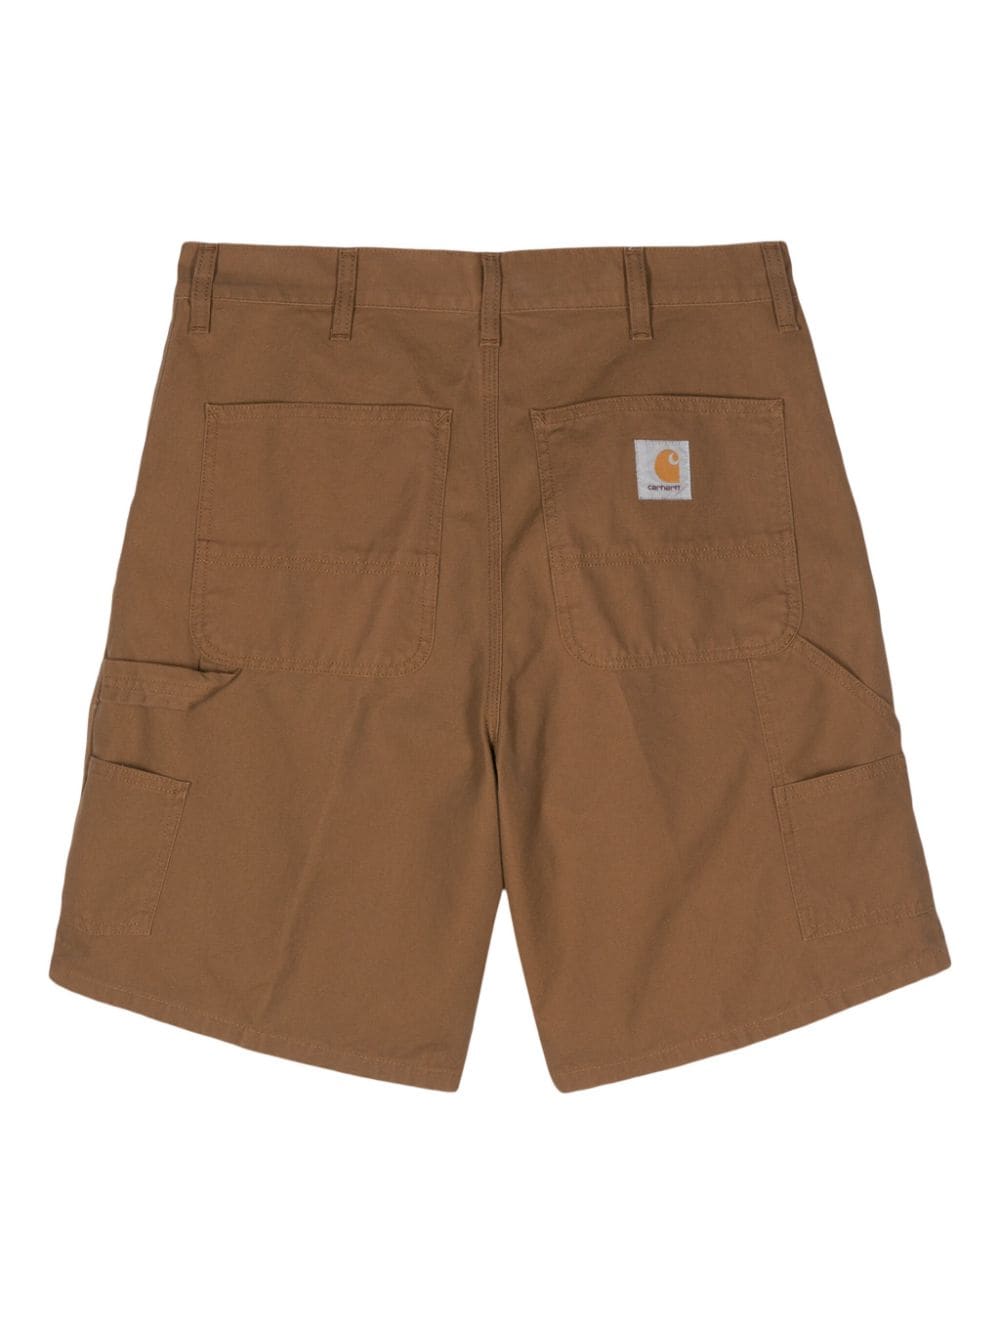 Carhartt WIP Marshall katoenen shorts met logo-applicatie - Bruin